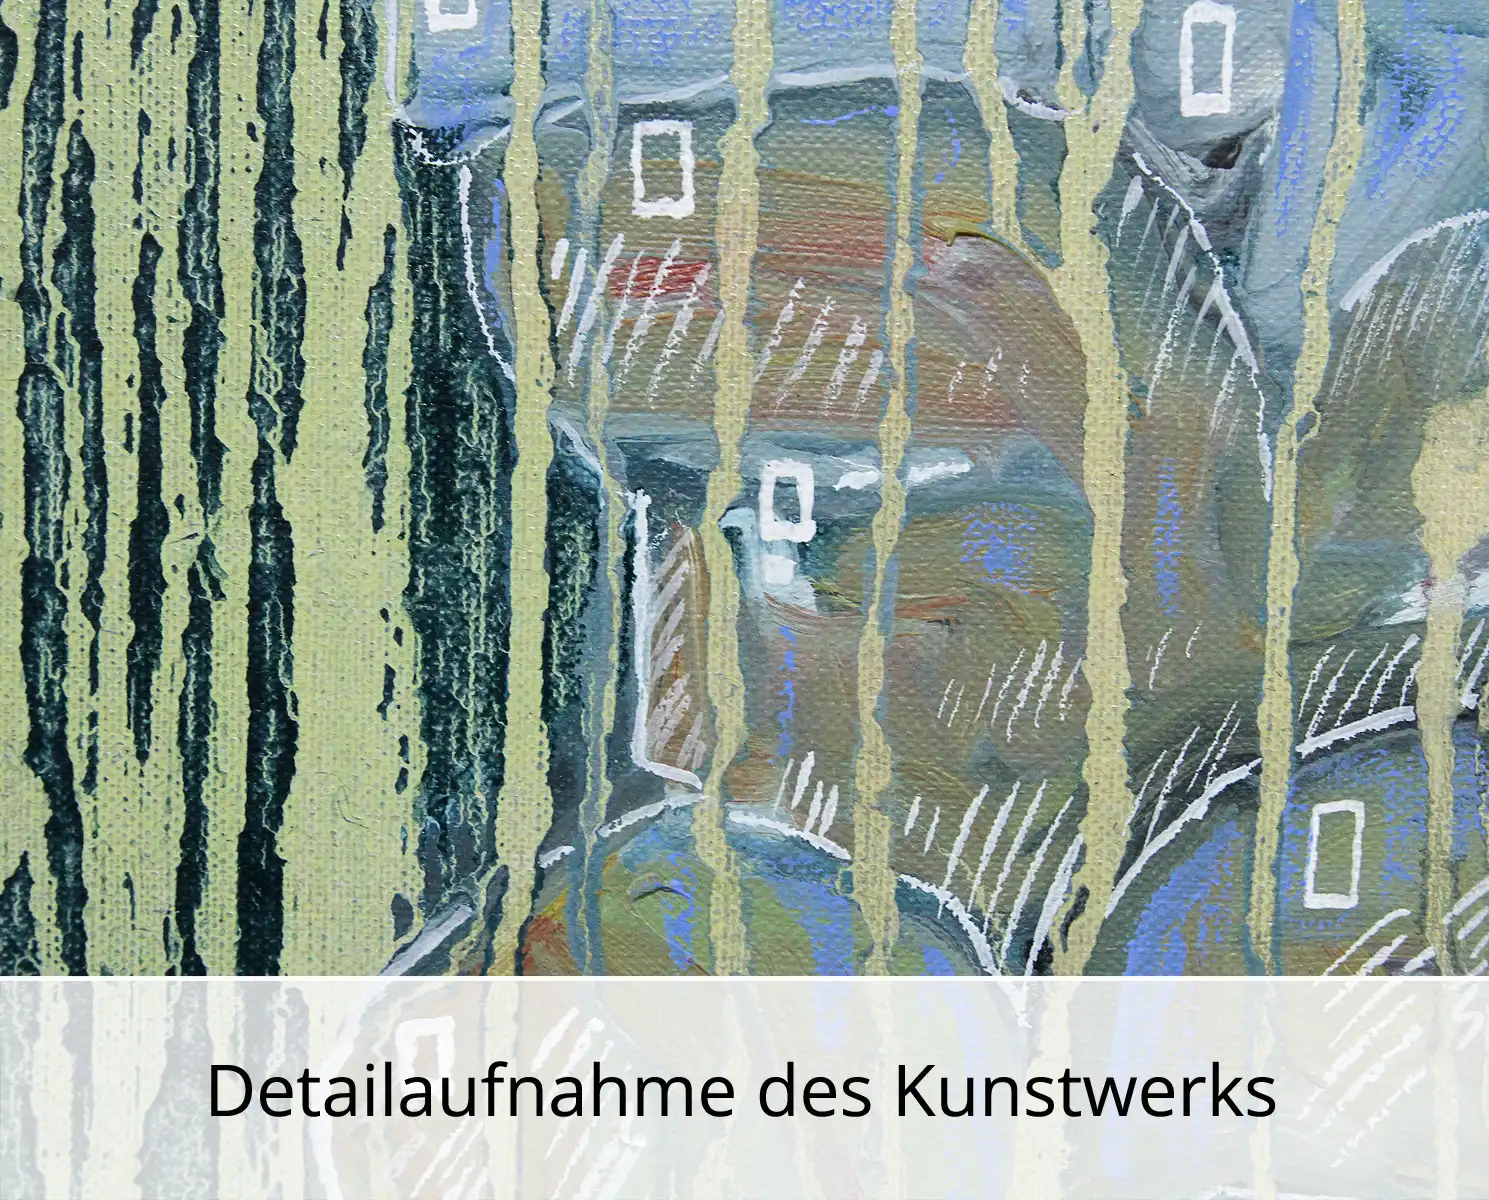 C. Blechschmidt: "In Gedanken", Original/Unikat, zeitgenössisches Ölgemälde